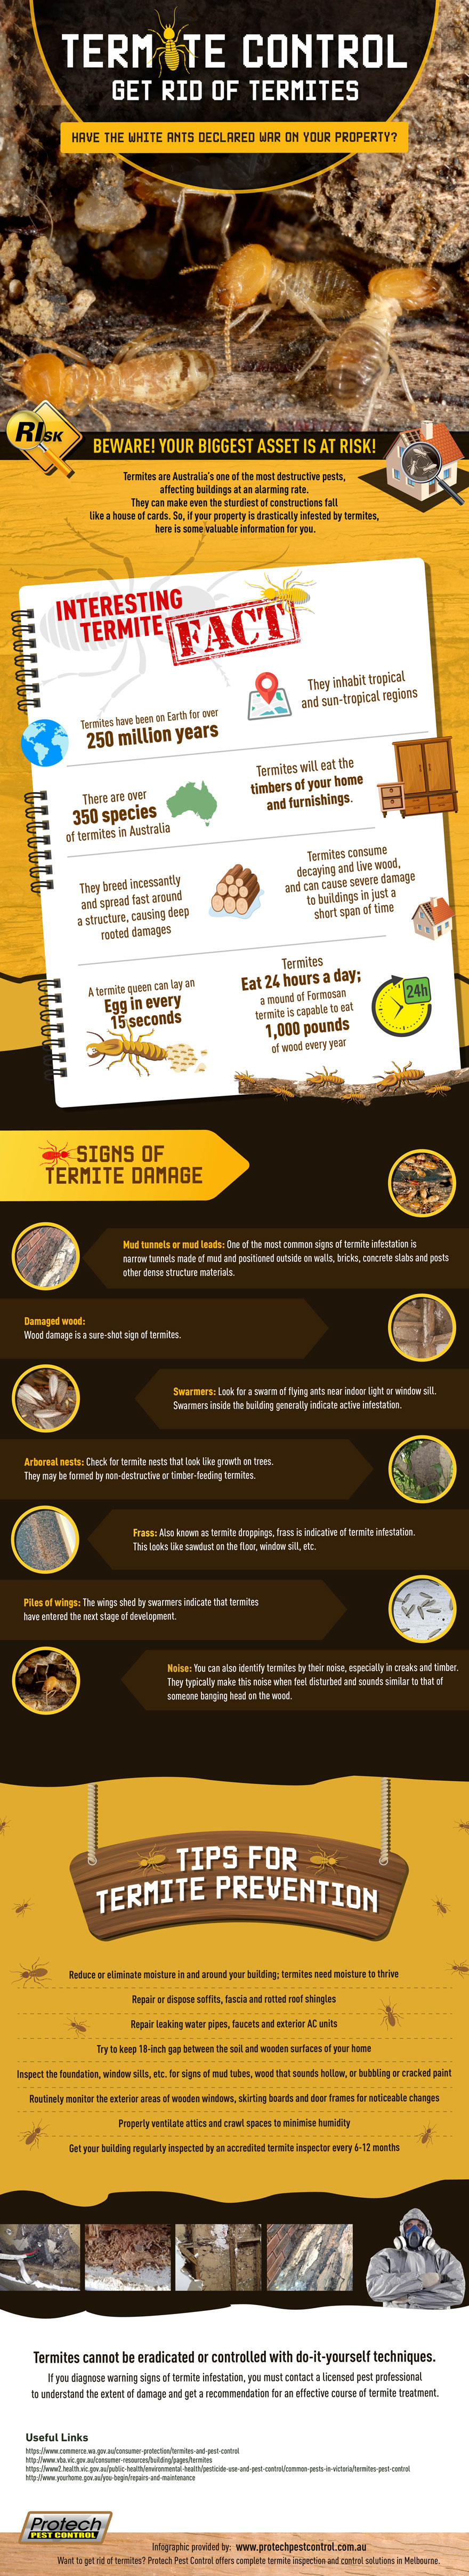 Termite Control: Get Rid of Termites